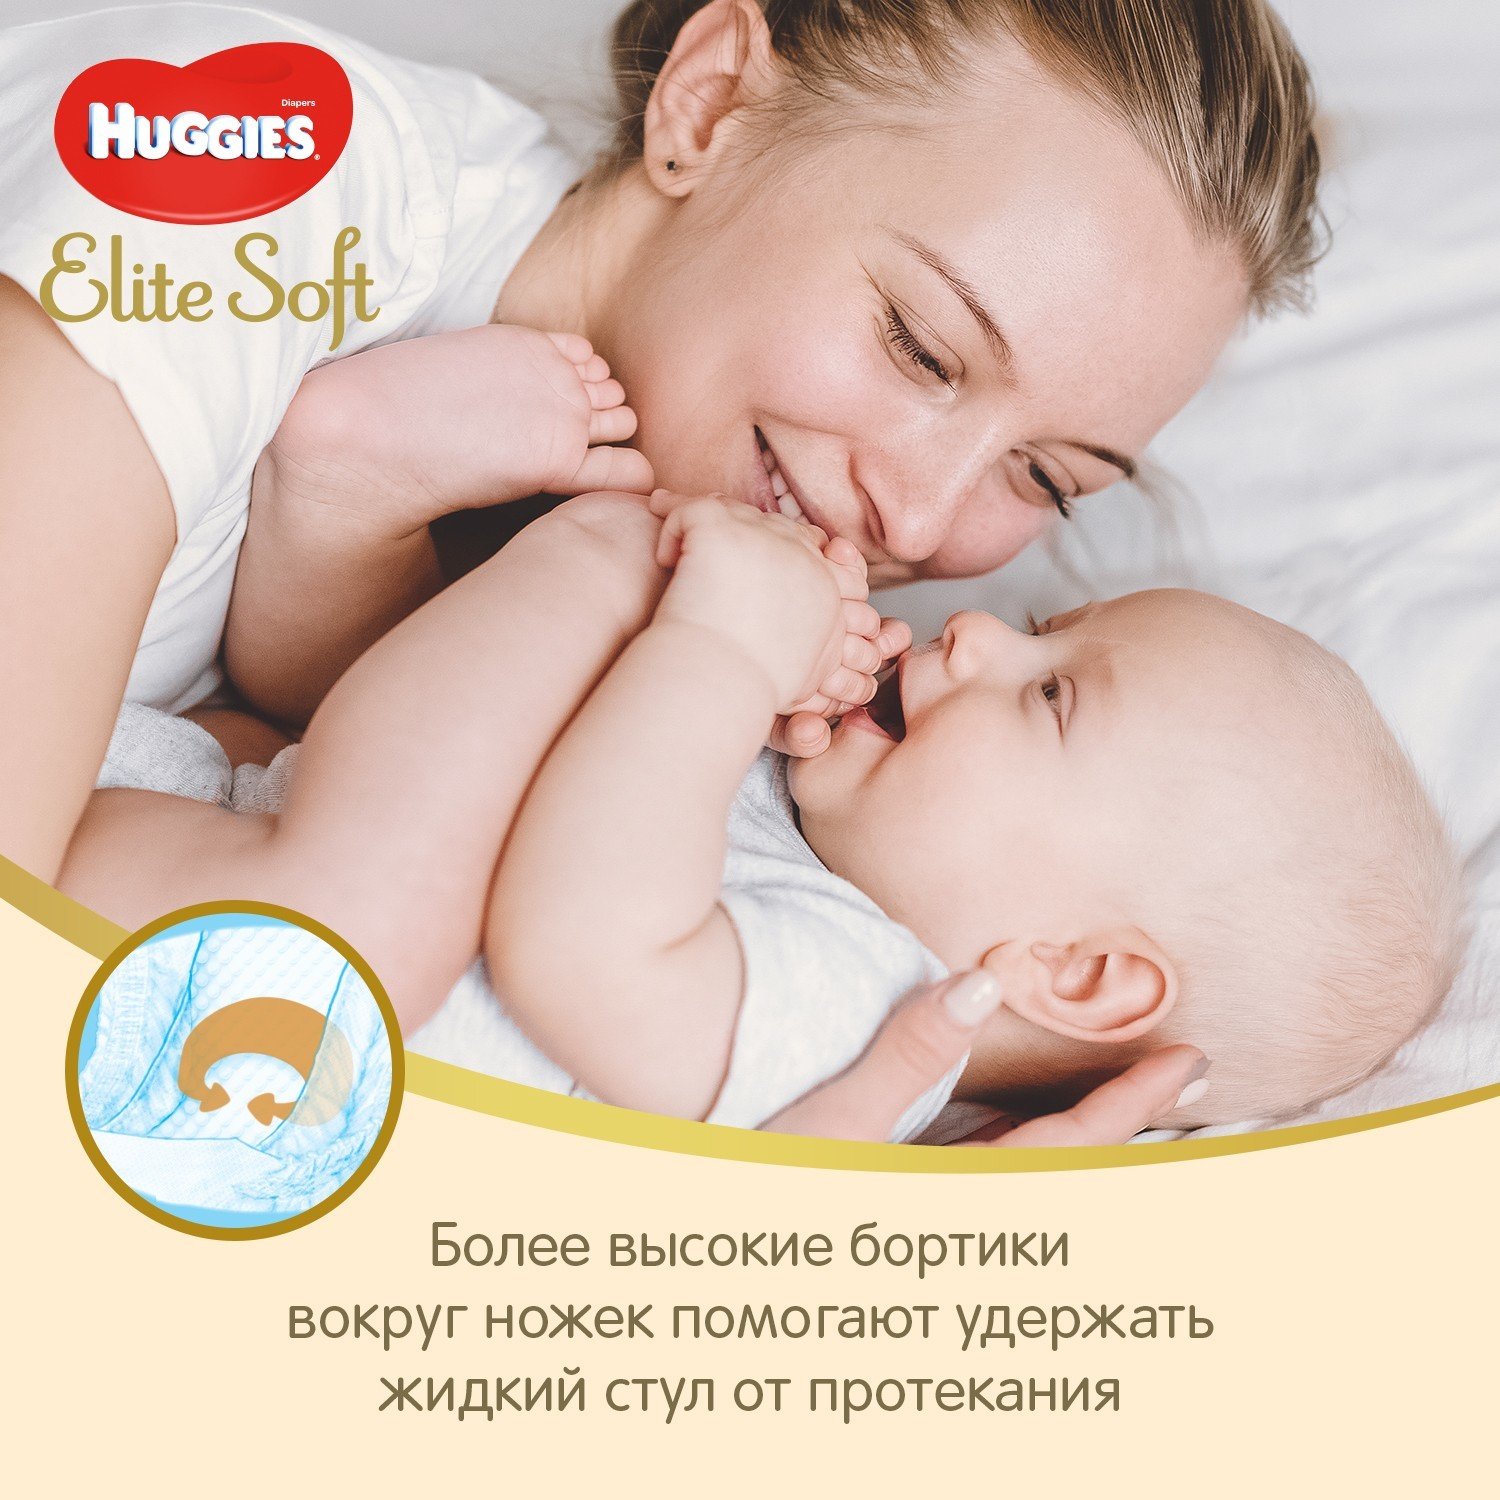 Подгузники Huggies Elite Soft для новорожденных 2 4-6кг 100шт